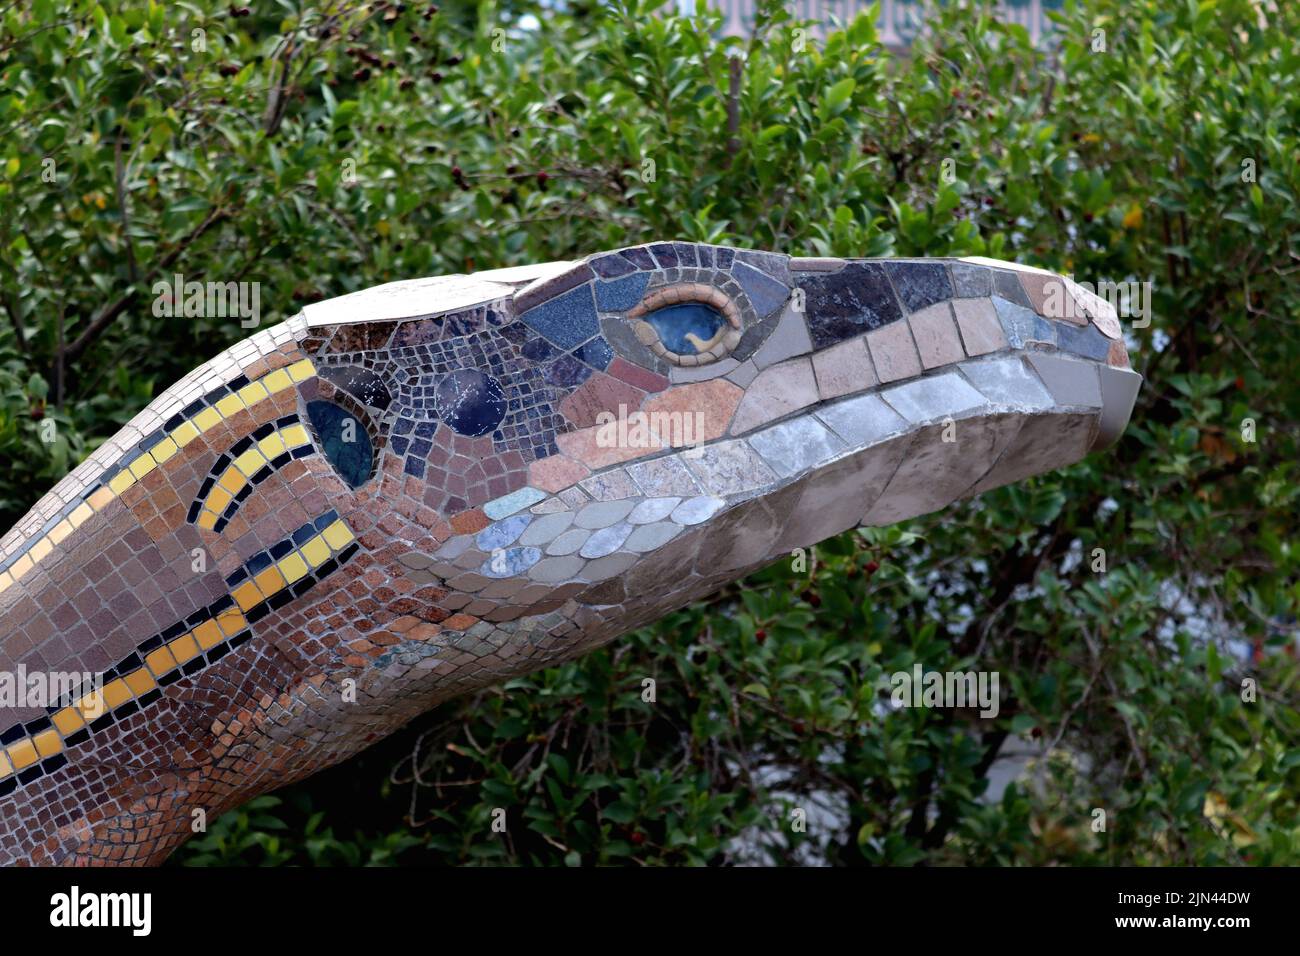 Una delle due lucertole giganti decorate con pezzi di mosaico multicolore esposti al Parque Antonio Gómez Felipe, la Palma, Santa Cruz, Isole Canarie. Foto Stock